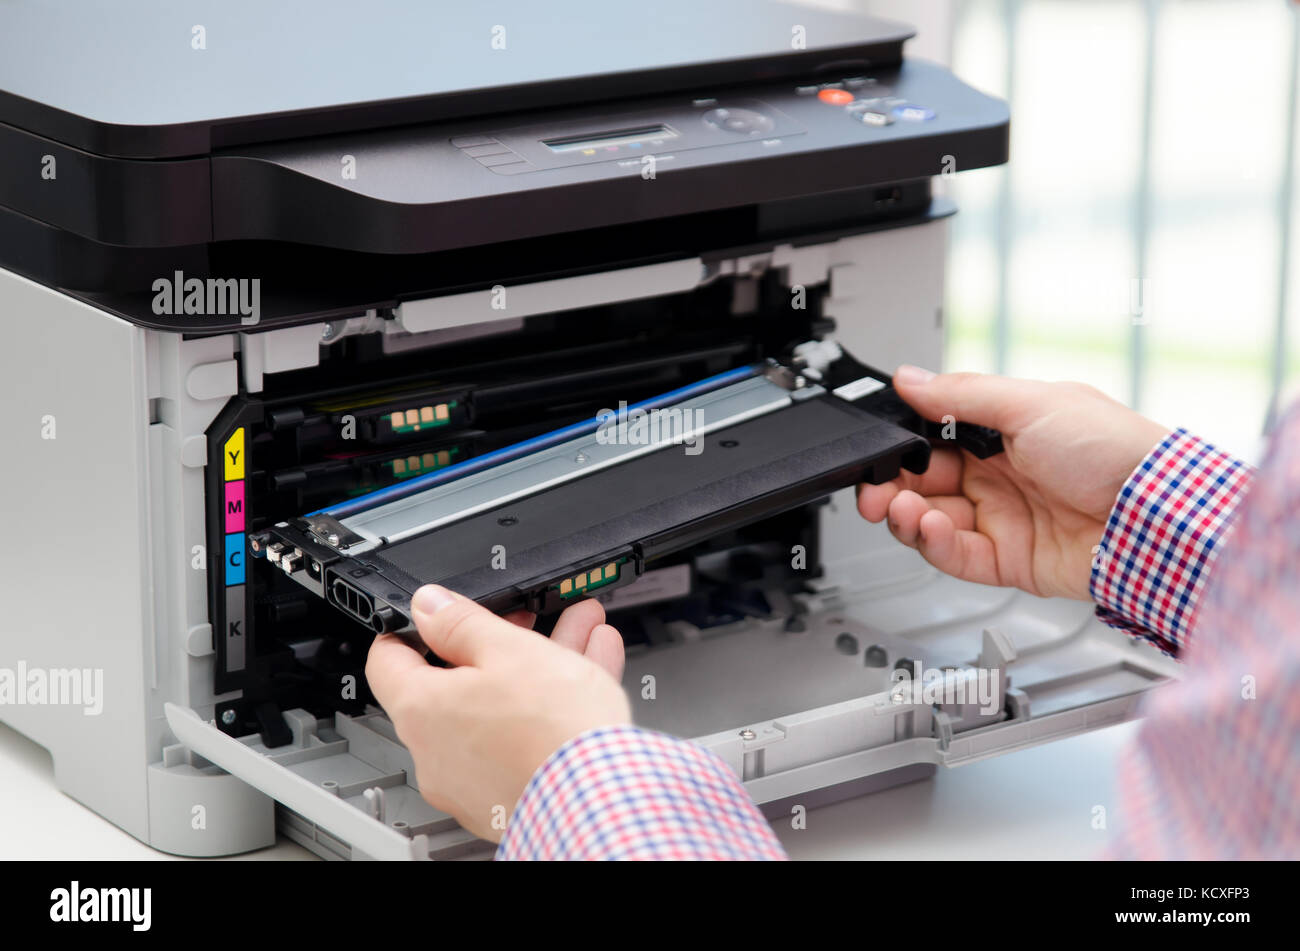 Mann ersetzt Toner für Laserdrucker Toner Drucker patrone Drucken Laser  Bürobedarf refill Konzept Stockfotografie - Alamy